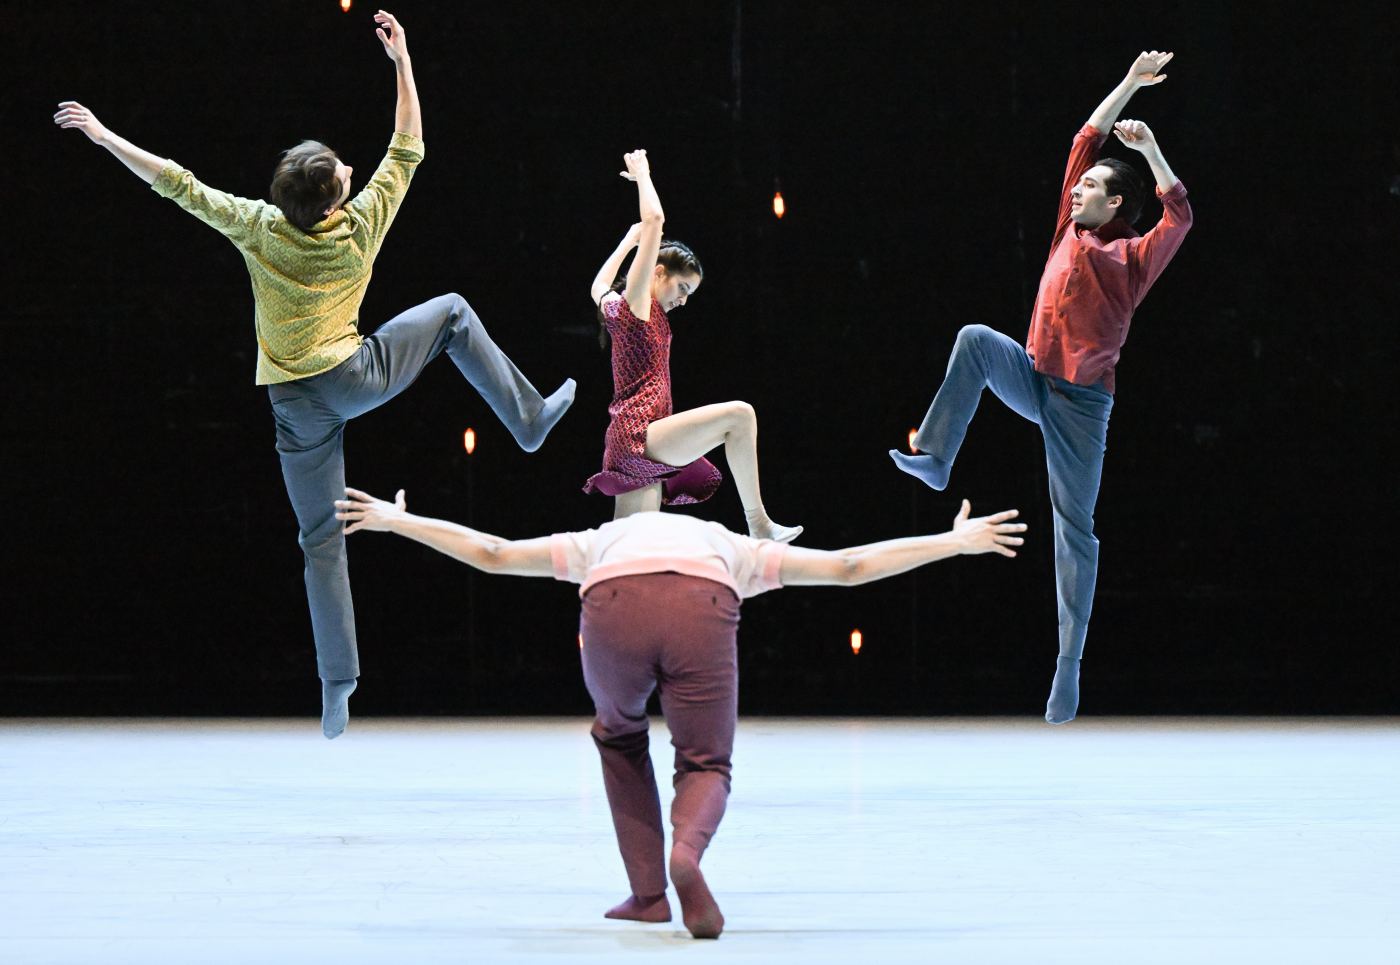 4. T.Afshar, M.Miccini, V.Girelli, and A.Giaquinto, “Bliss” by J.Inger, Stuttgart Ballet 2022 © Stuttgart Ballet